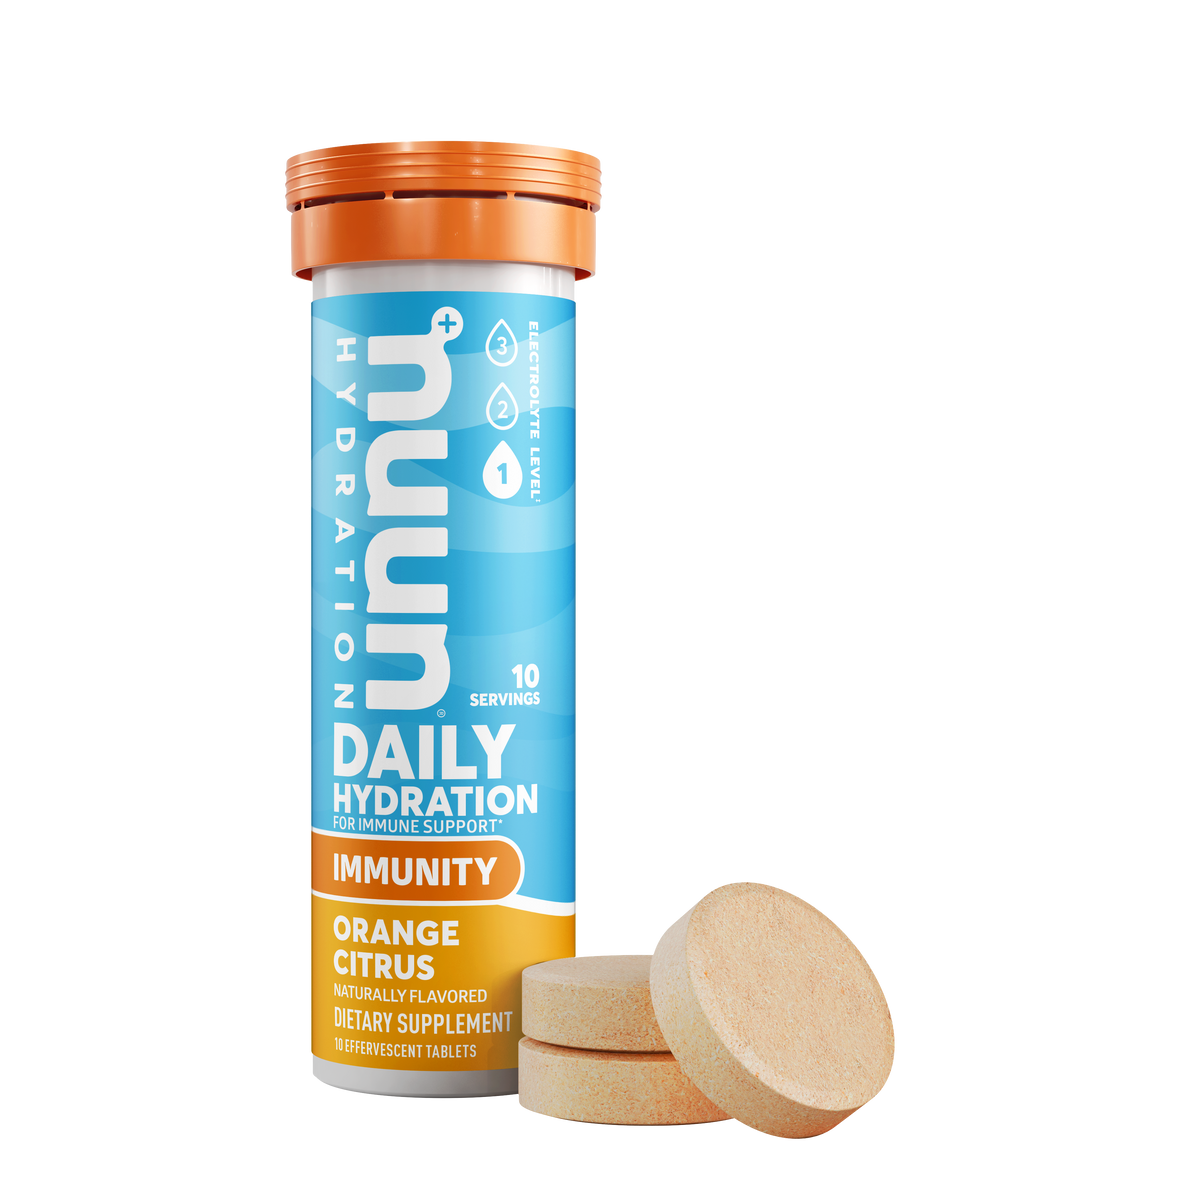 Nuun Immunity Hydration Tabs, Orange Citrus - 1.9 oz tube